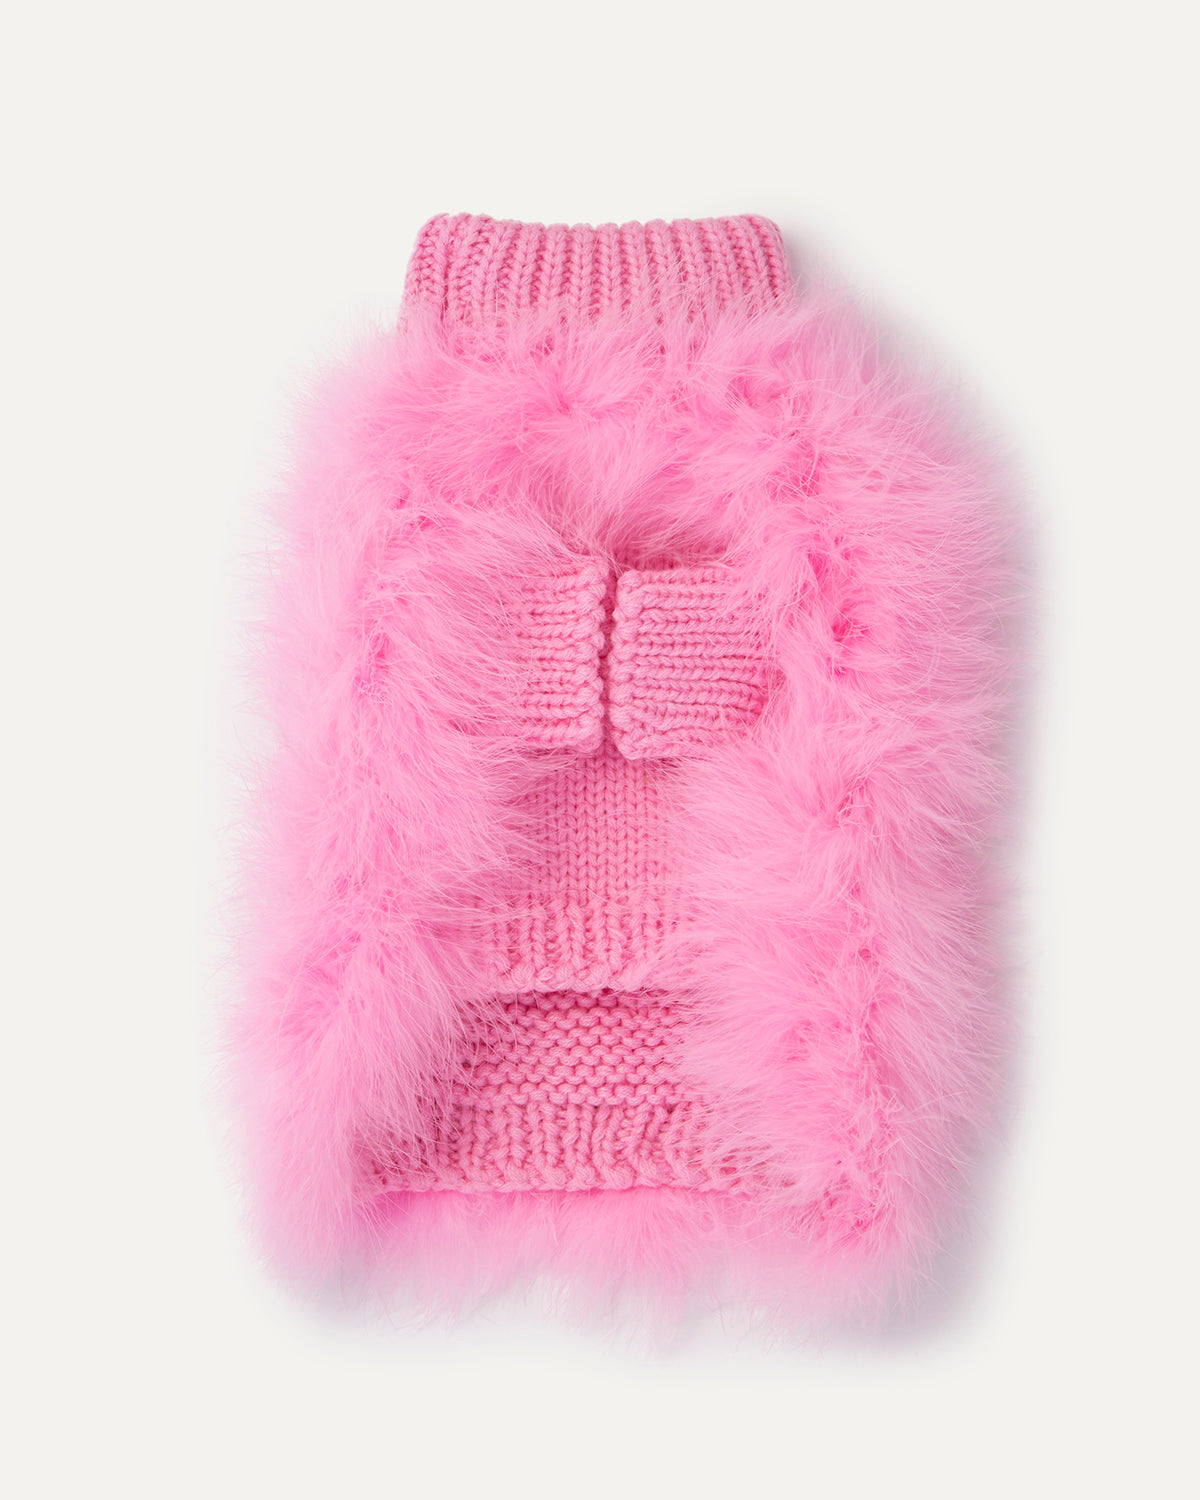 Christian Cowan x Maxbone Sweater - Pink